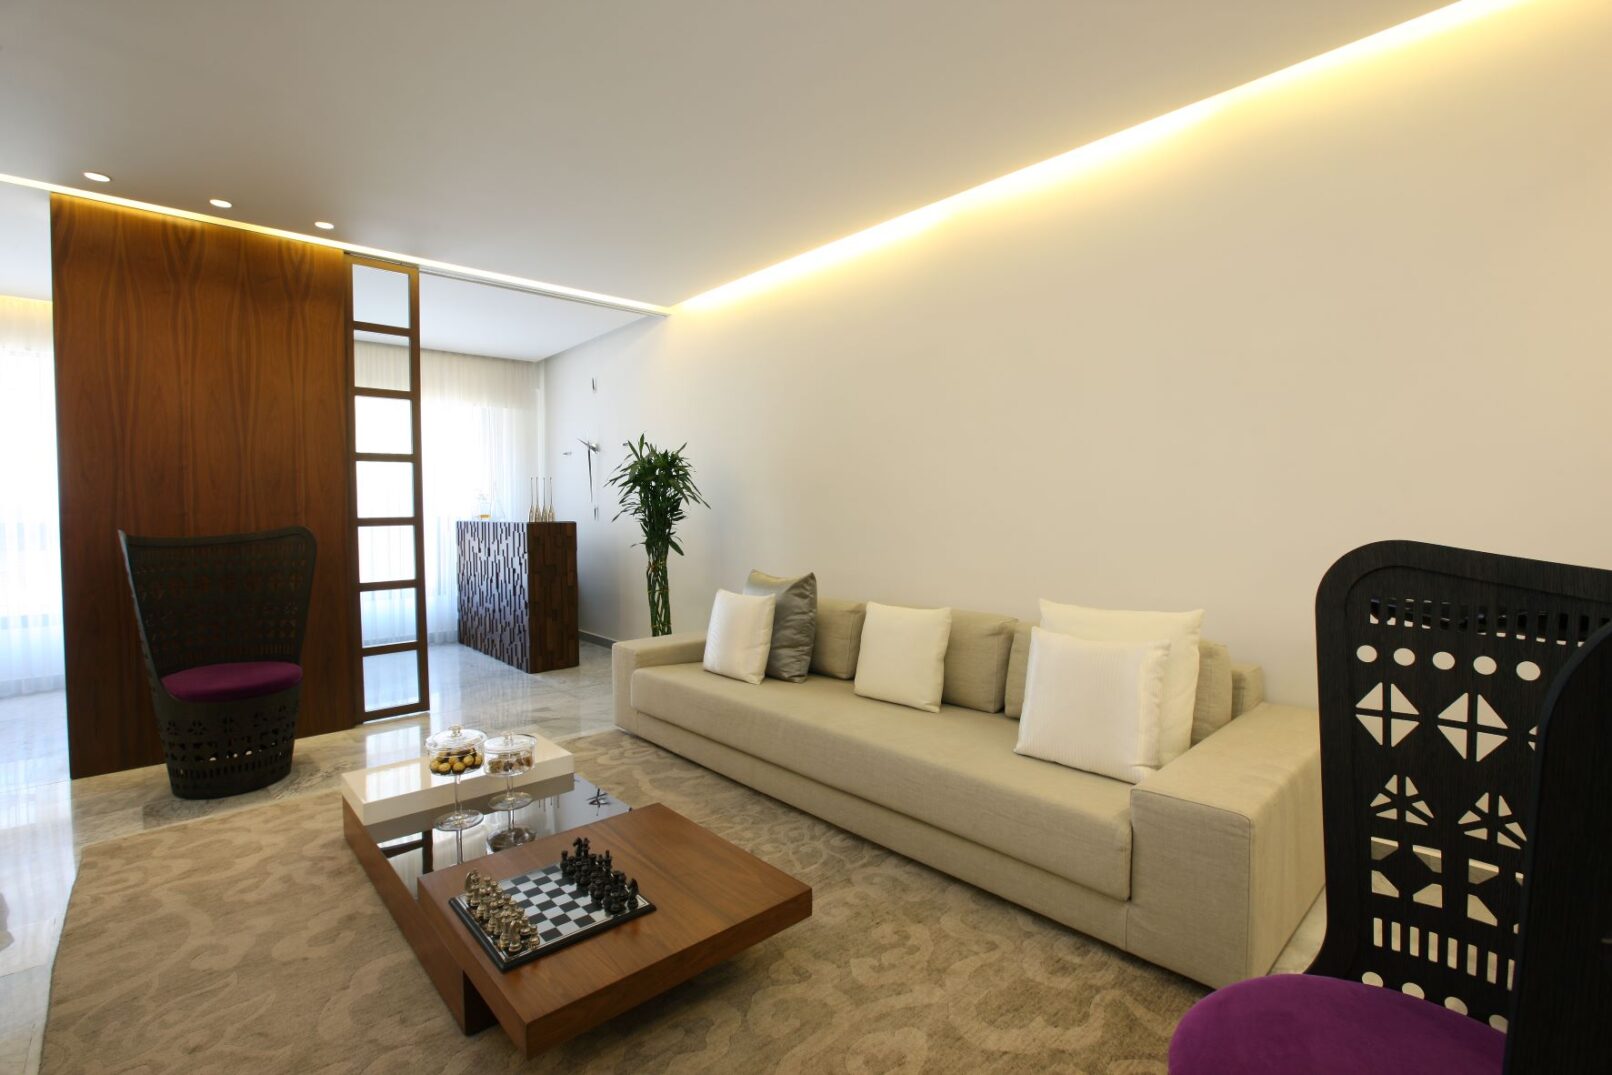 Apartment interior design